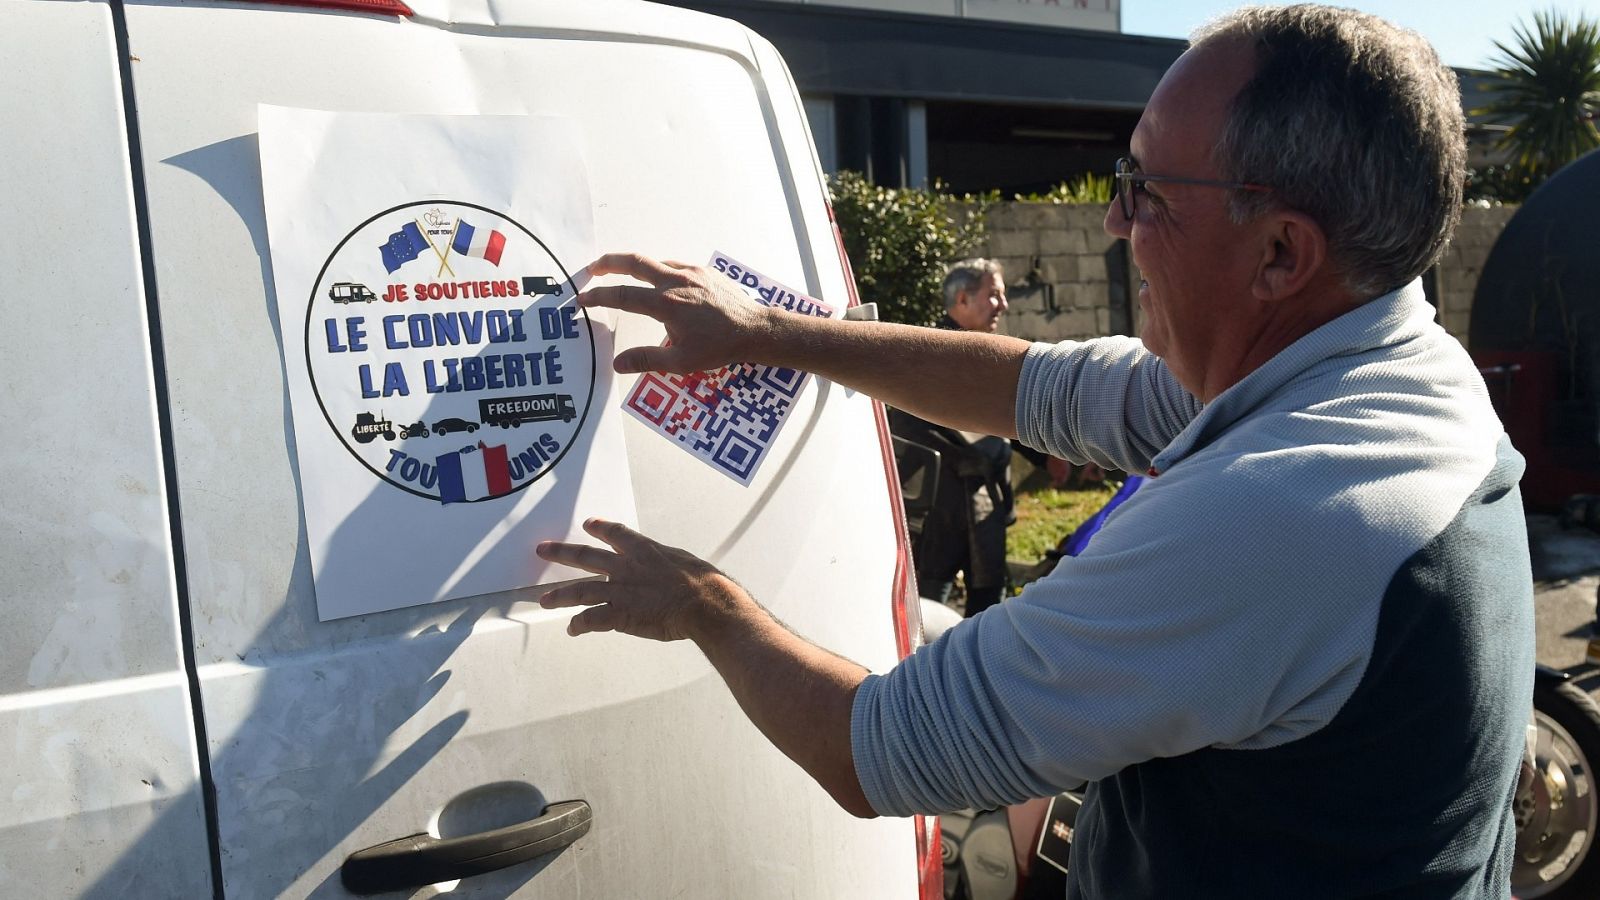 Una persona pega un cartel del 'Convoy de la libertad' en su vehículo